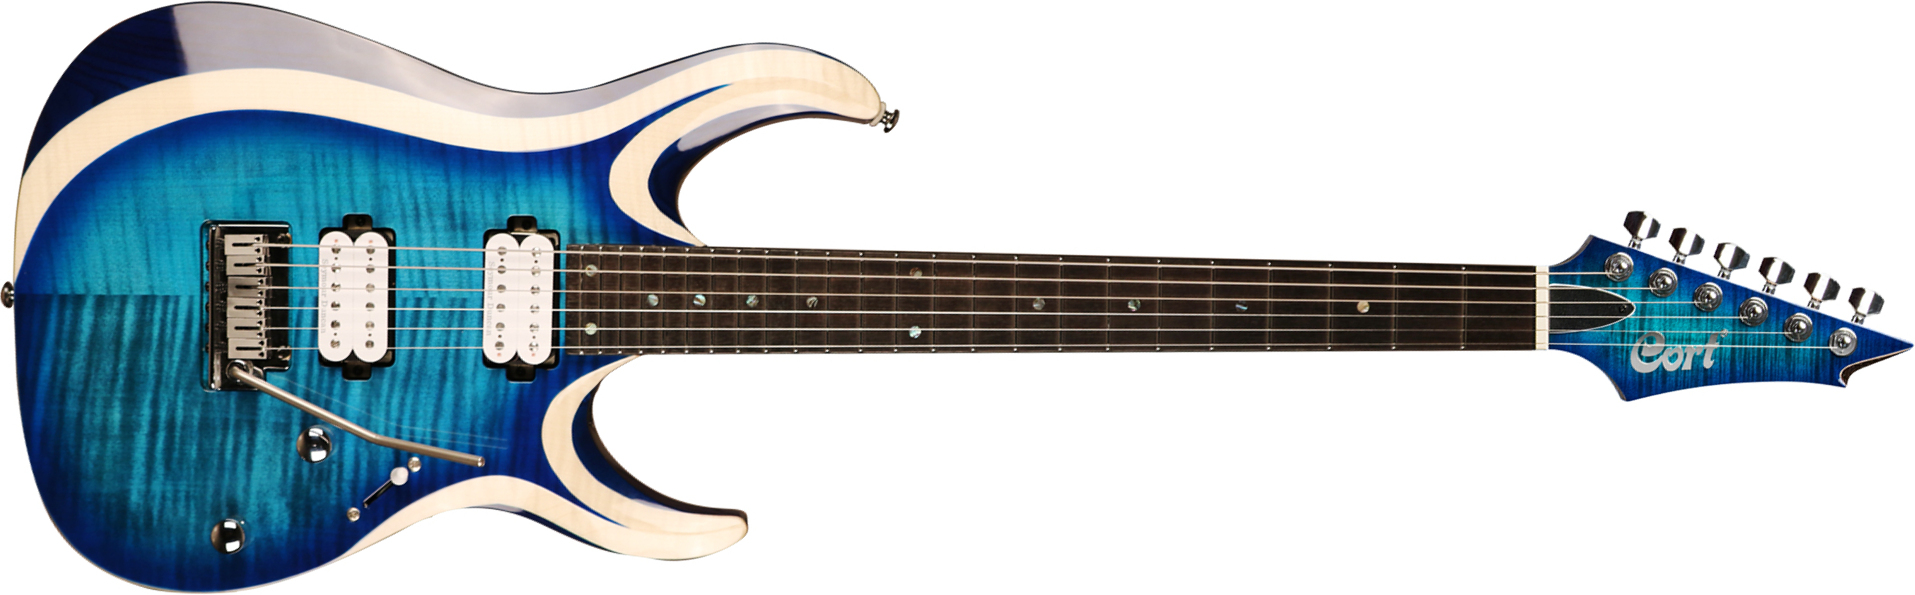 Cort X700 Duality Hh Seymour Duncan Ht Eb - Light Blue Burst - Str shape electric guitar - Main picture